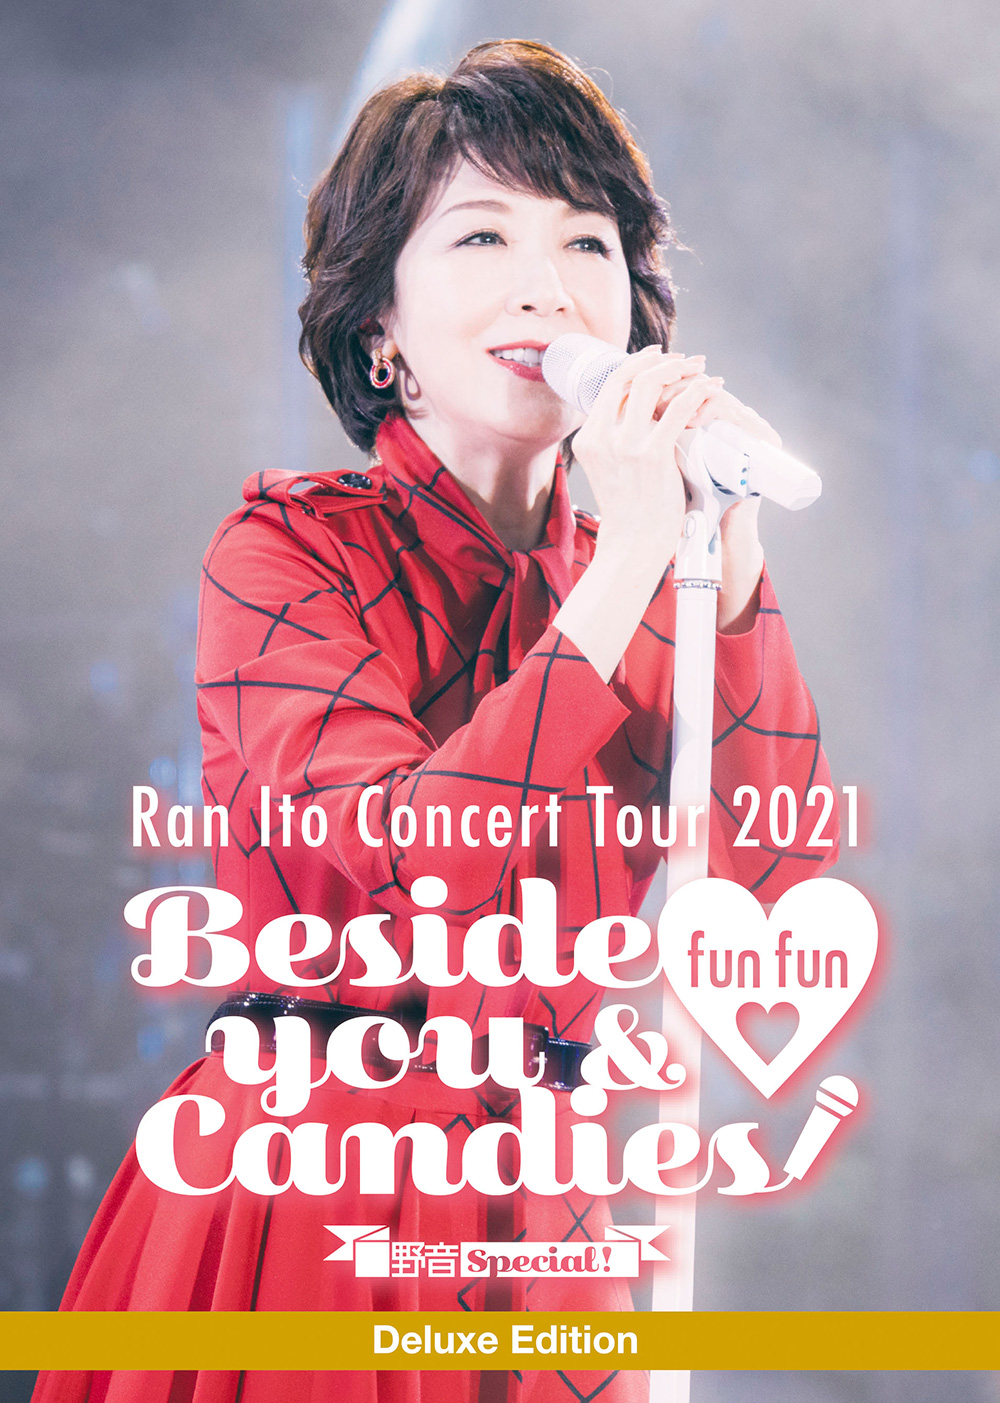 「伊藤 蘭コンサート・ツアー 2021～Beside you & fun fun Candies！～野音Special！」